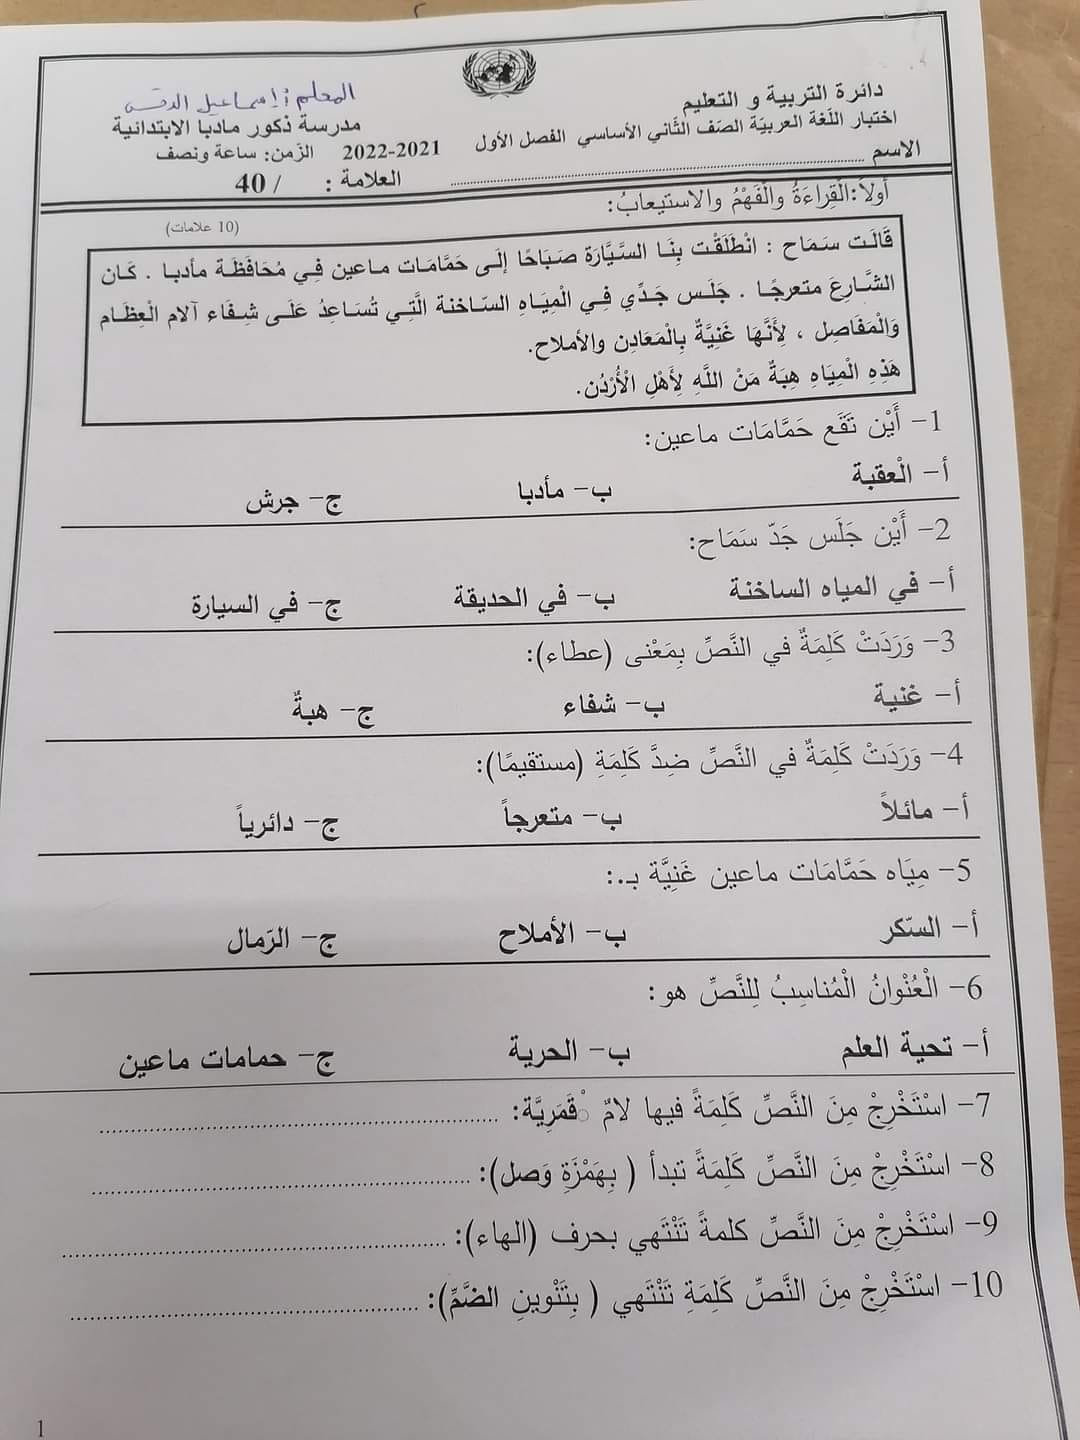 صور امتحان نهائي لمادة اللغة العربية للصف الثاني الفصل الاول 2021 نموذج وكالة